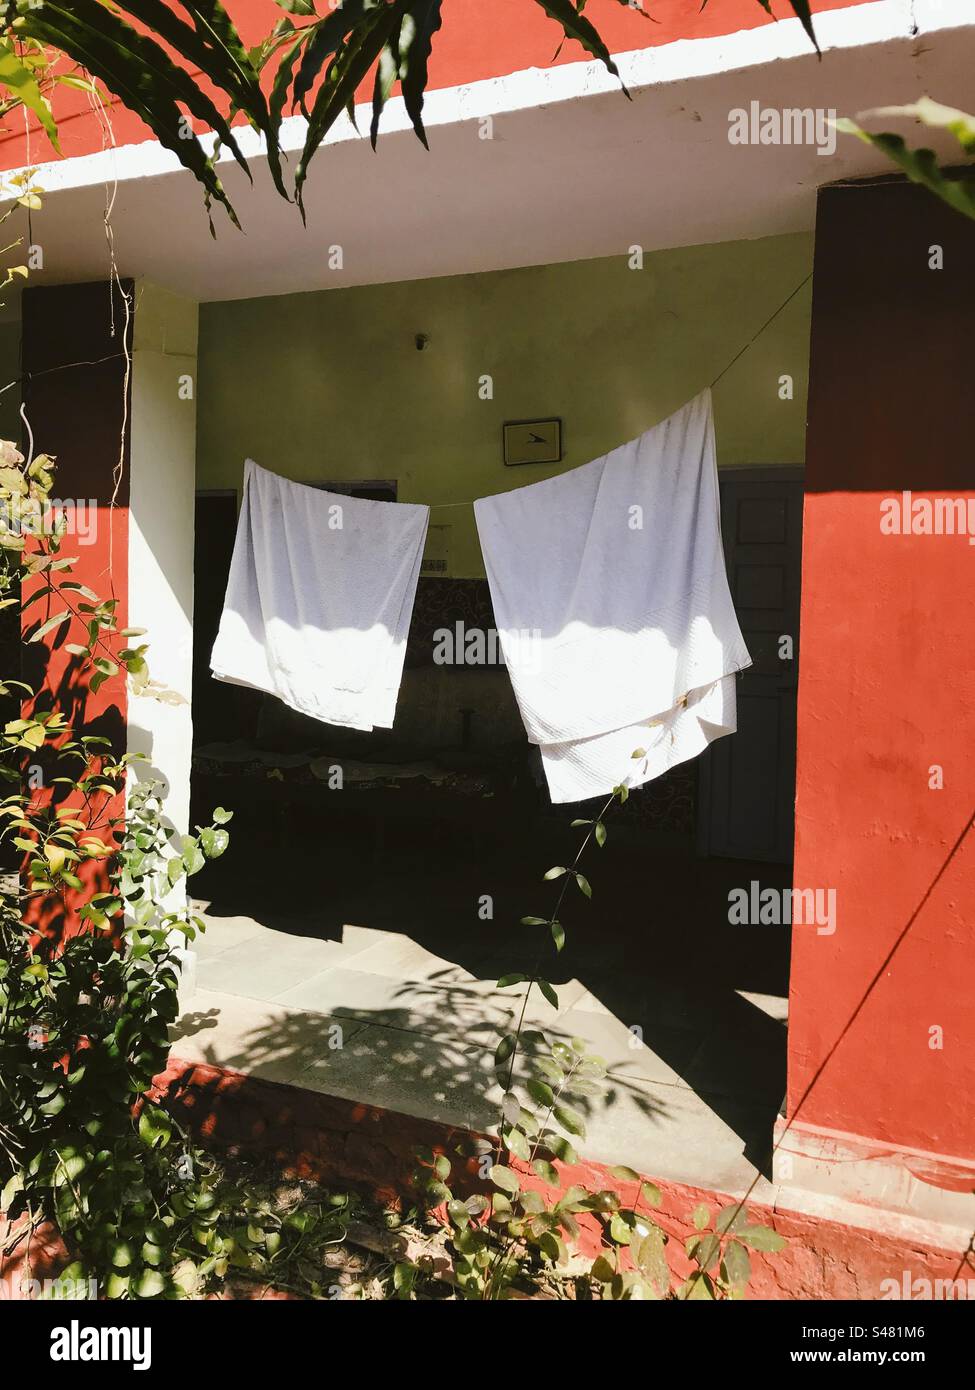 Zwei weiße Handtücher hängen an einer Wäscheleine und trocknen in der Sonne Stockfoto